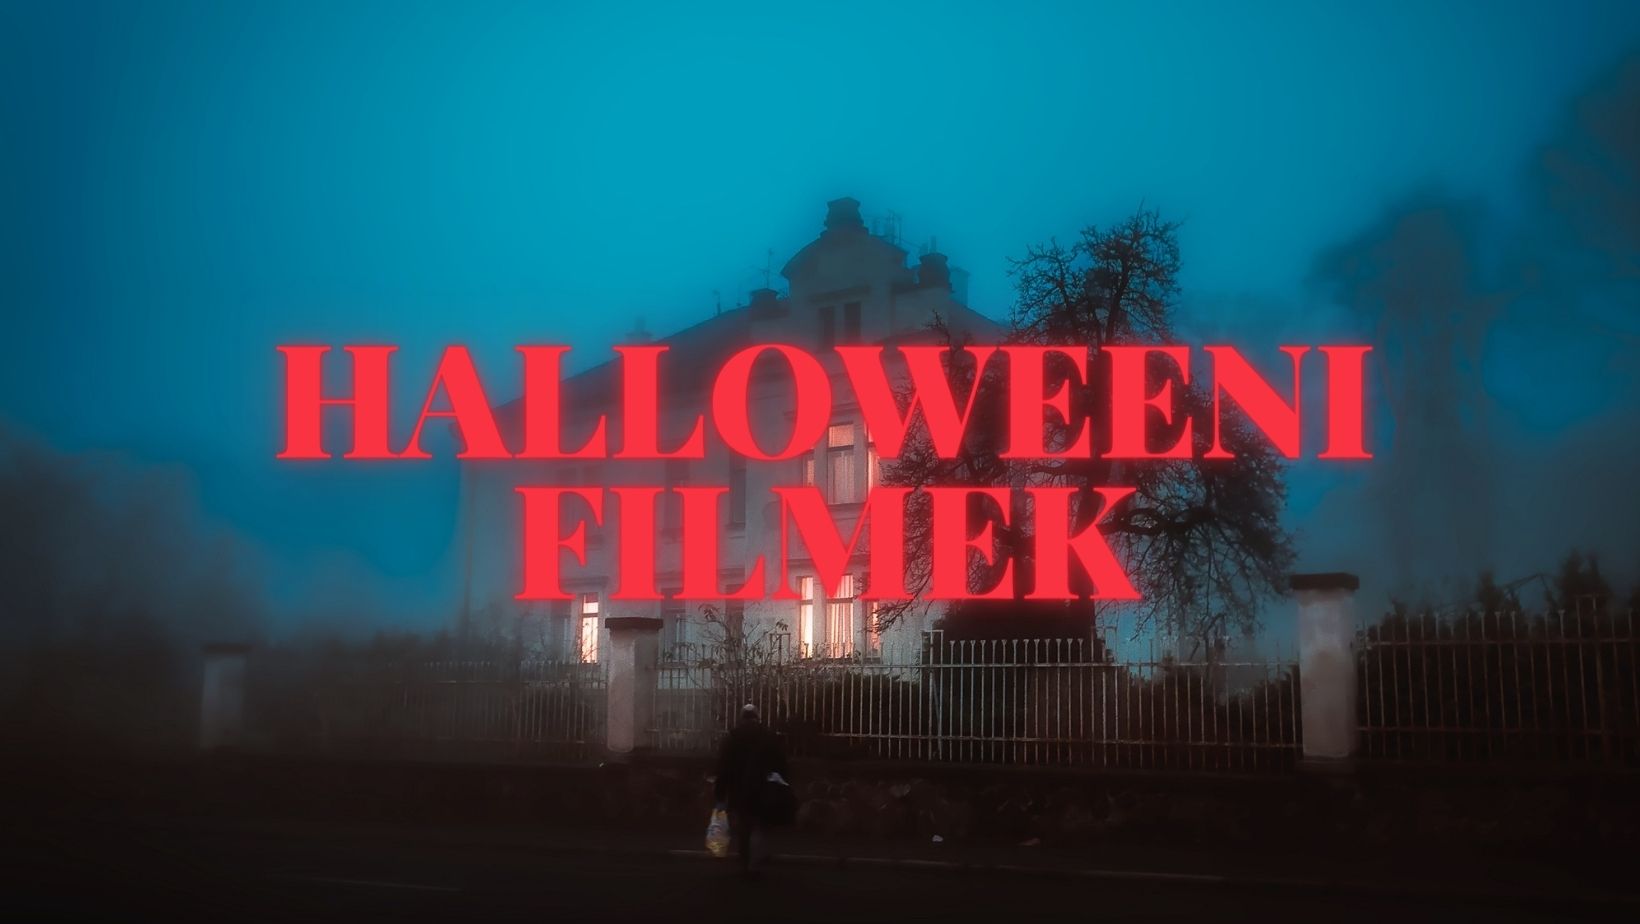 Íme a legjobb halloweeni filmek gyerekeknek és felnőtteknek egyaránt